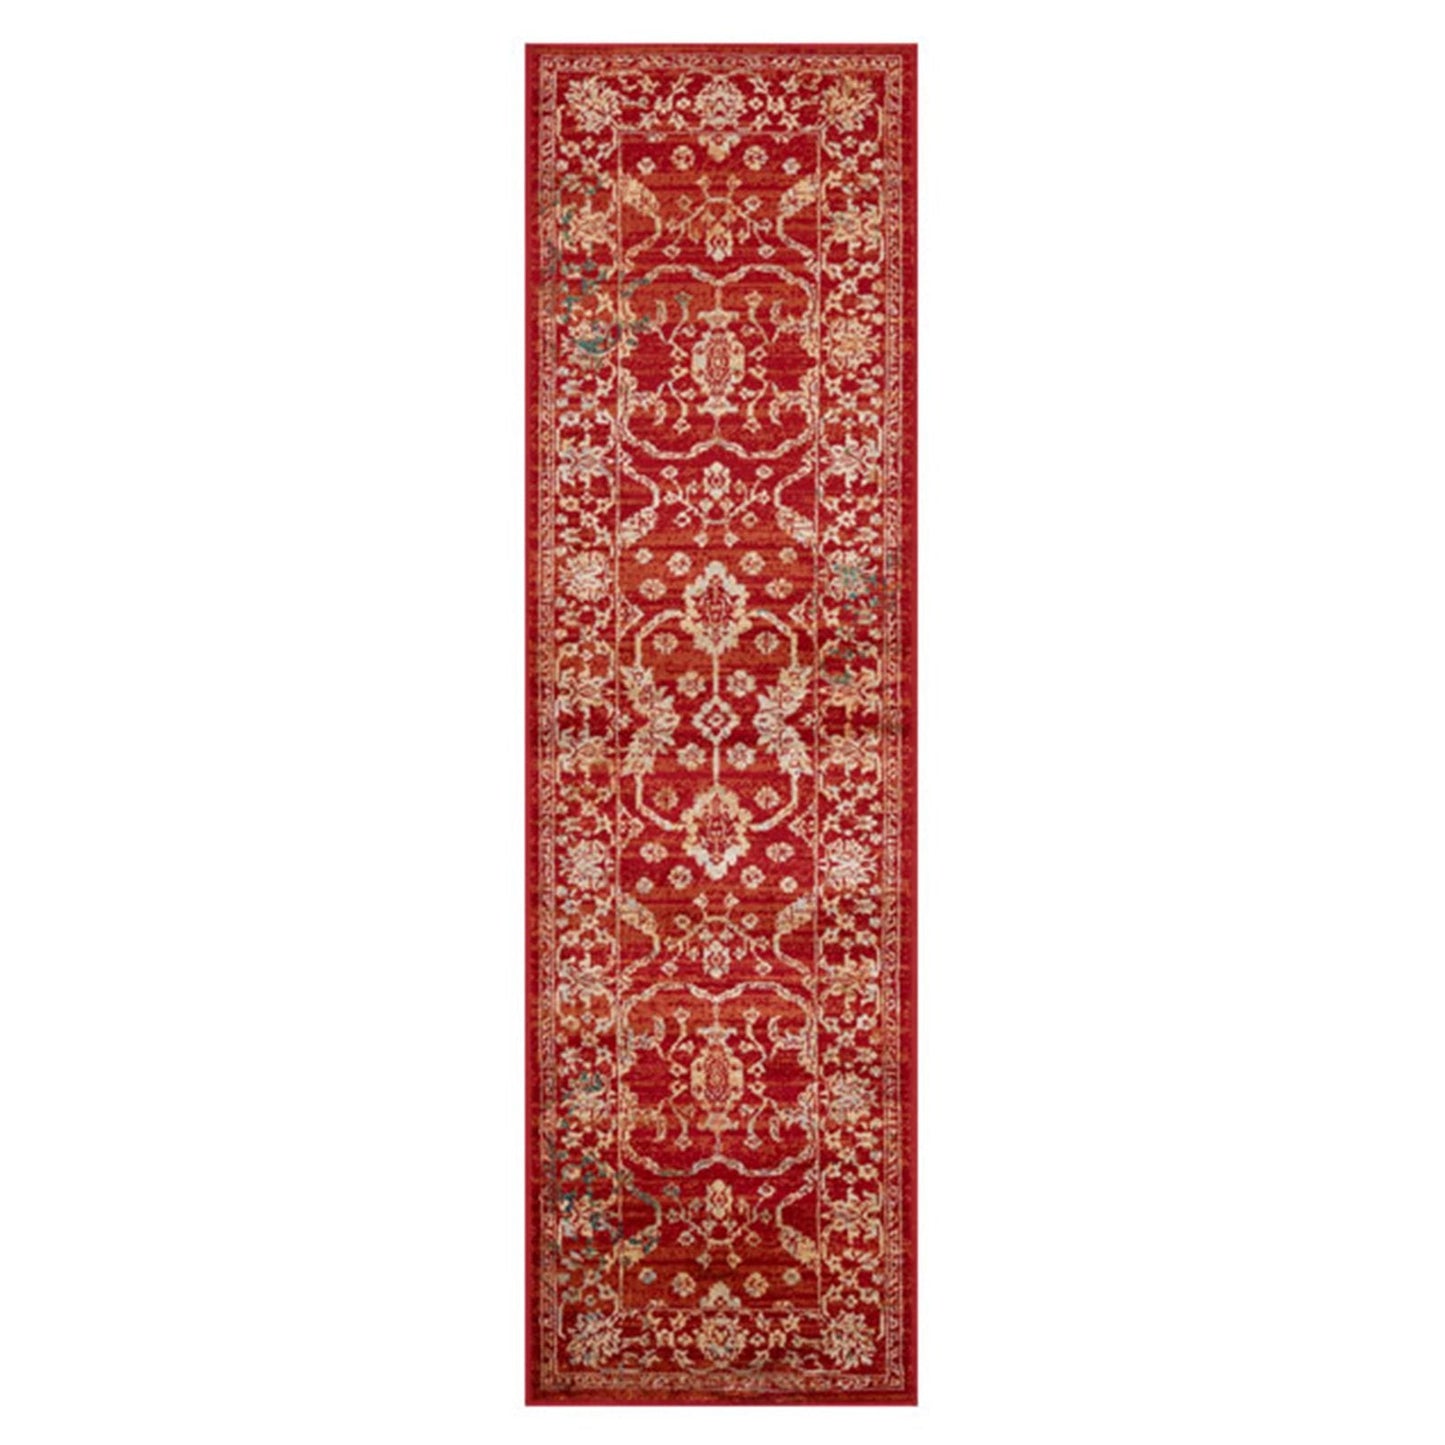 Valeria 8023 R Multicoloured Traditional Rugs